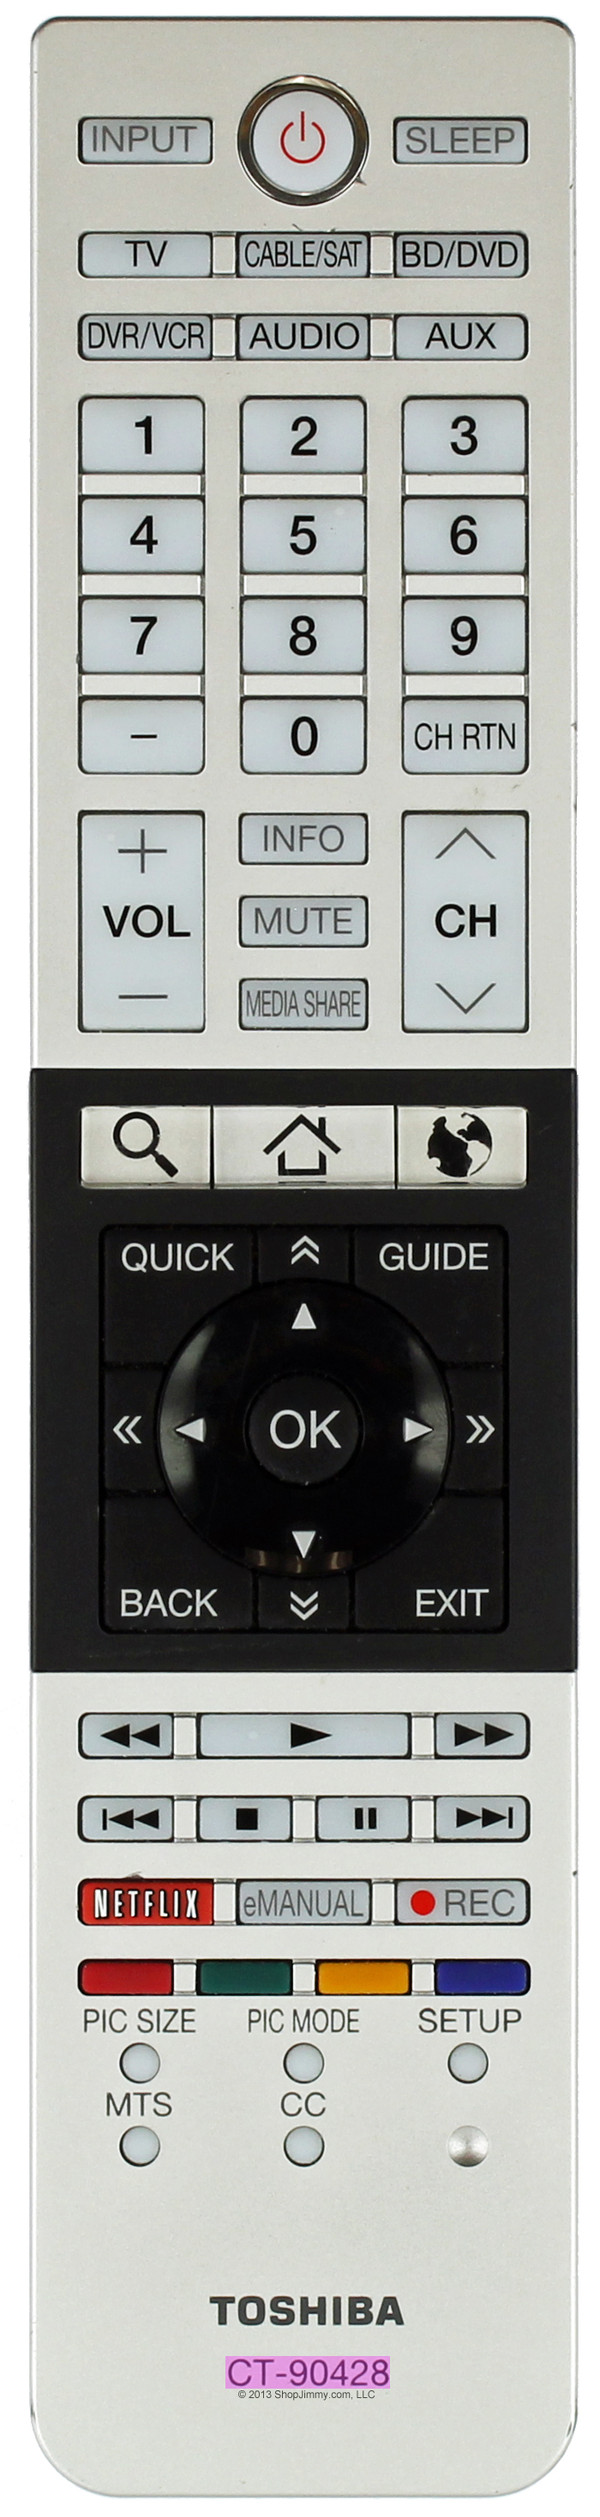 Toshiba 75033412 Remote Control